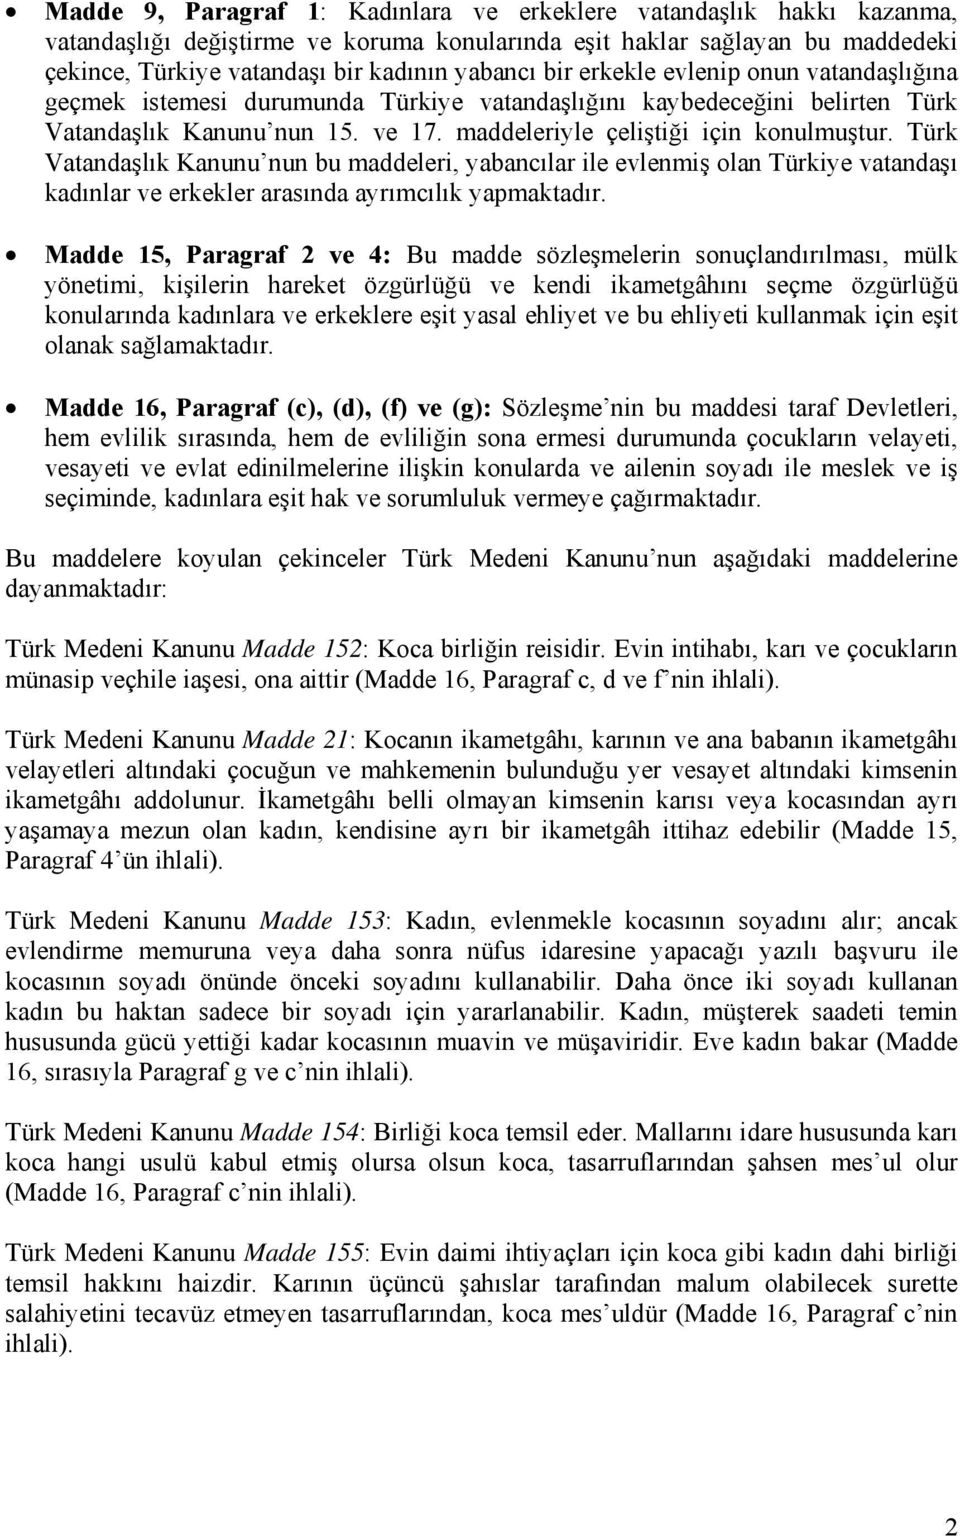 Türk Vatandaşlık Kanunu nun bu maddeleri, yabancılar ile evlenmiş olan Türkiye vatandaşı kadınlar ve erkekler arasında ayrımcılık yapmaktadır.